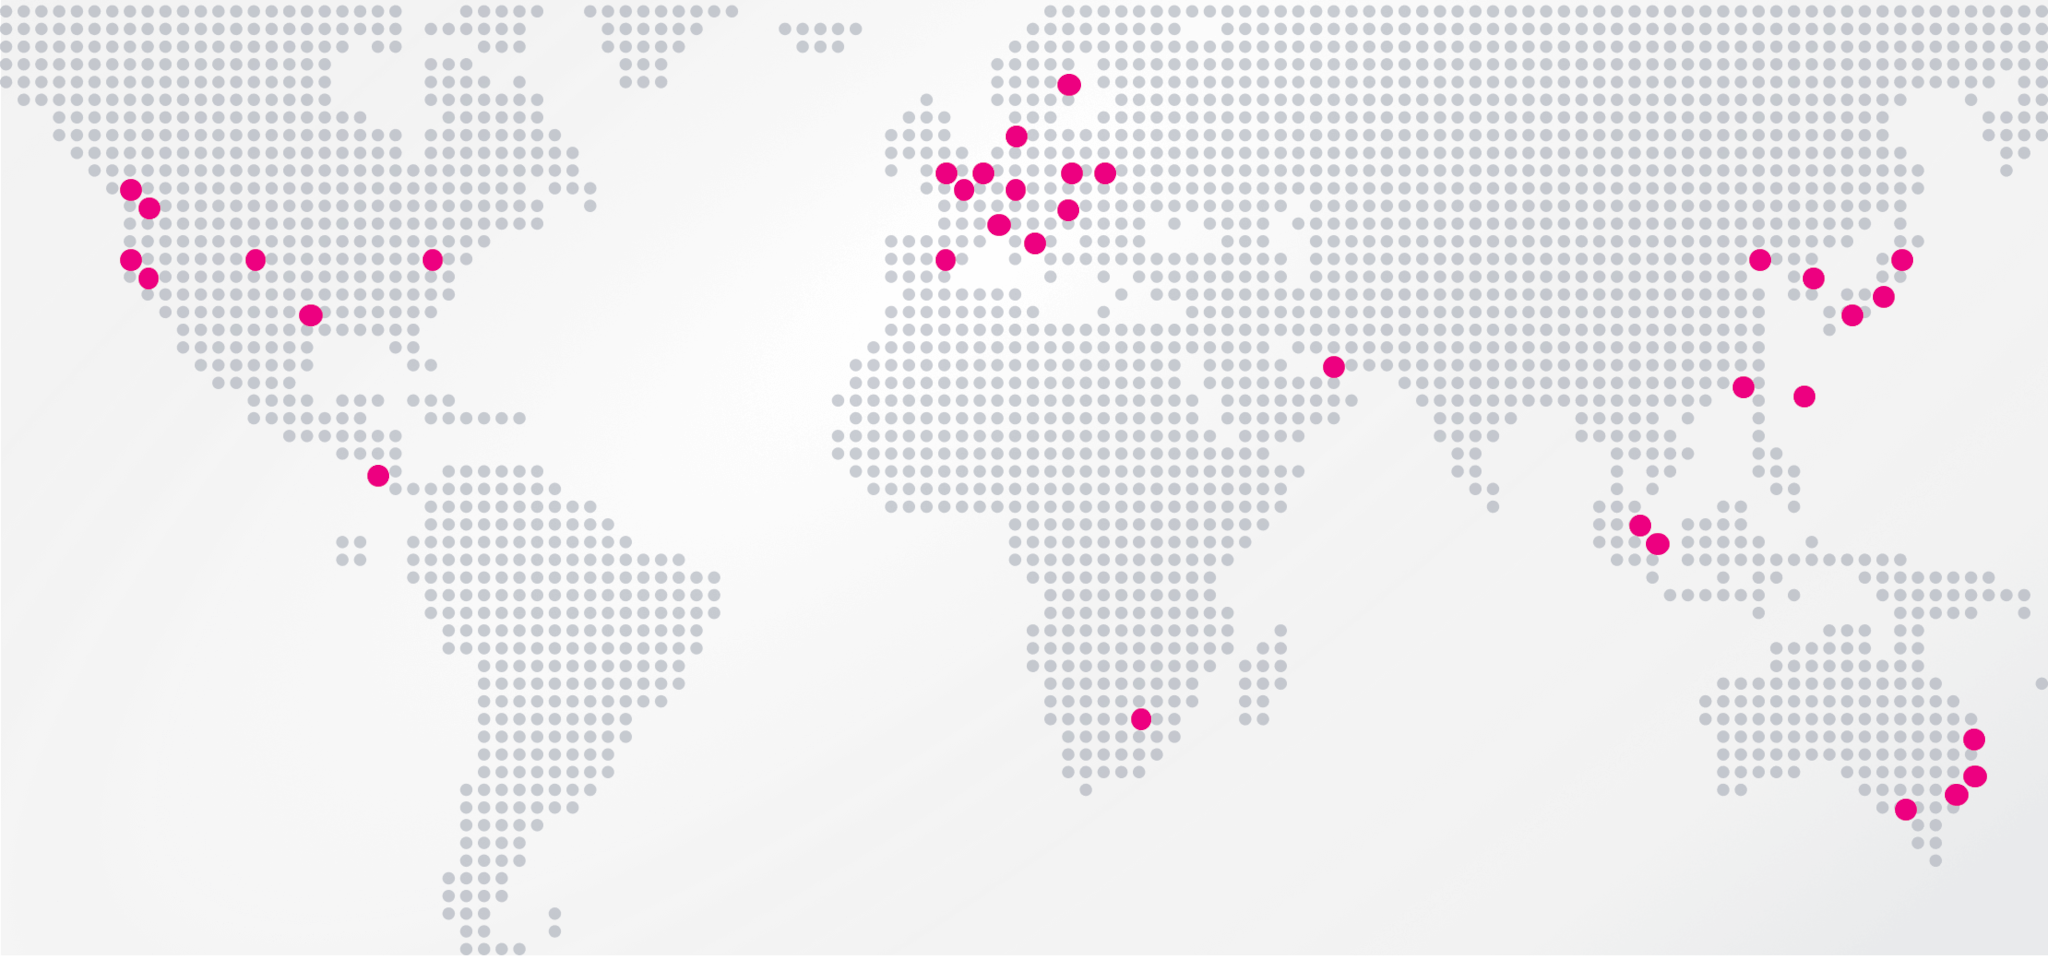 世界に広がるSplunkのオフィスを示す地図。北米、ヨーロッパ、中東、アフリカ、アジア、オーストラリアに位置する30を超える世界のオフィスが赤い点で示されている。